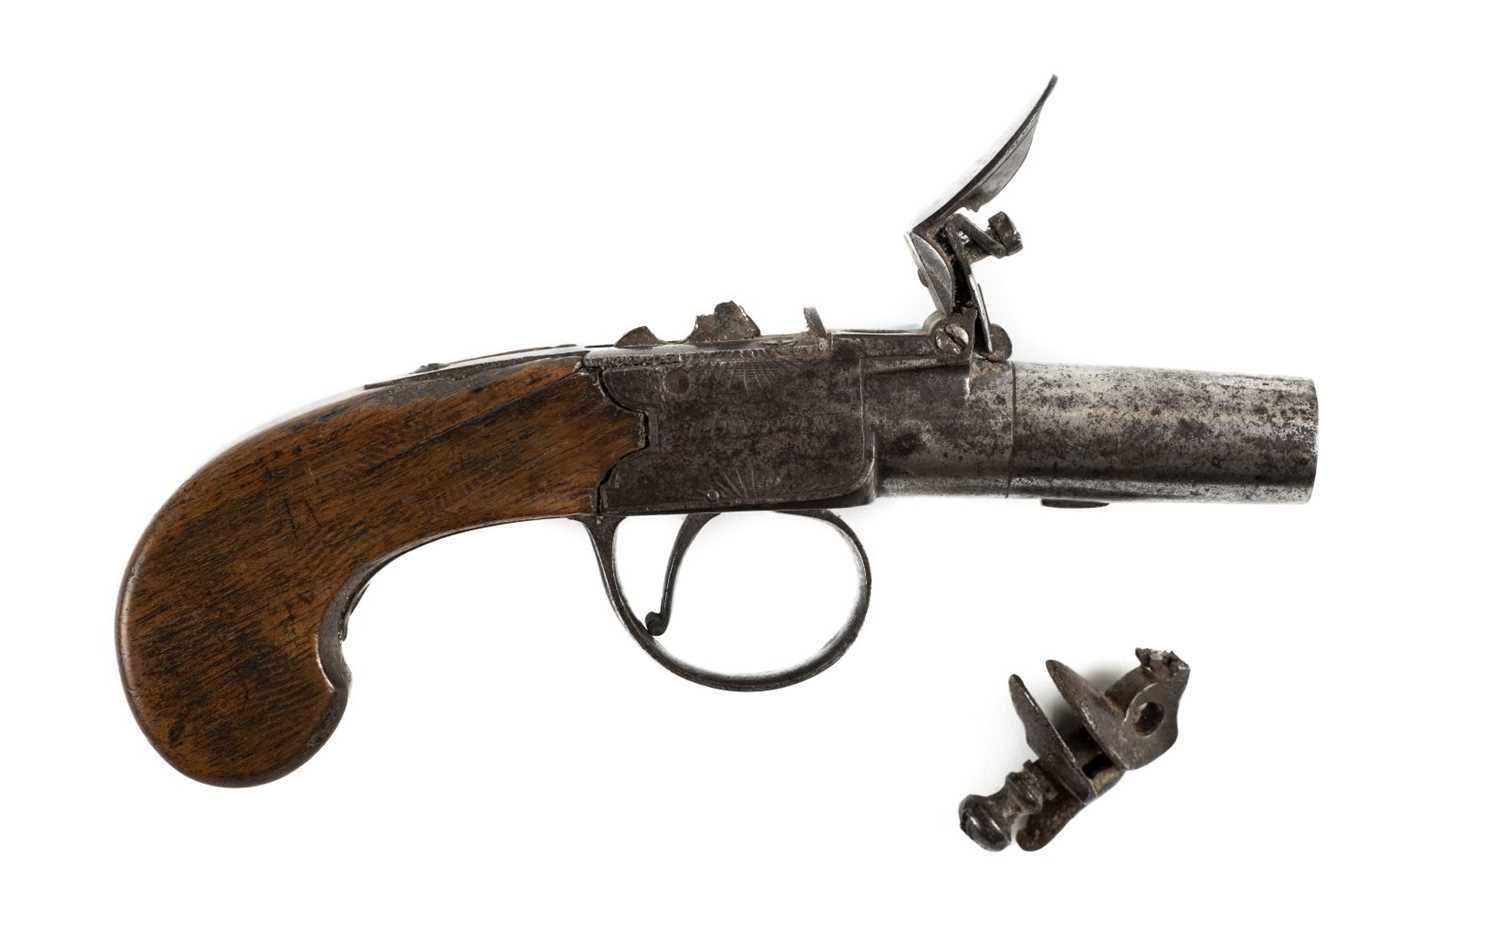 Lot 4 - Pistol. An early 19th century flintlock pistol by Blanch, London